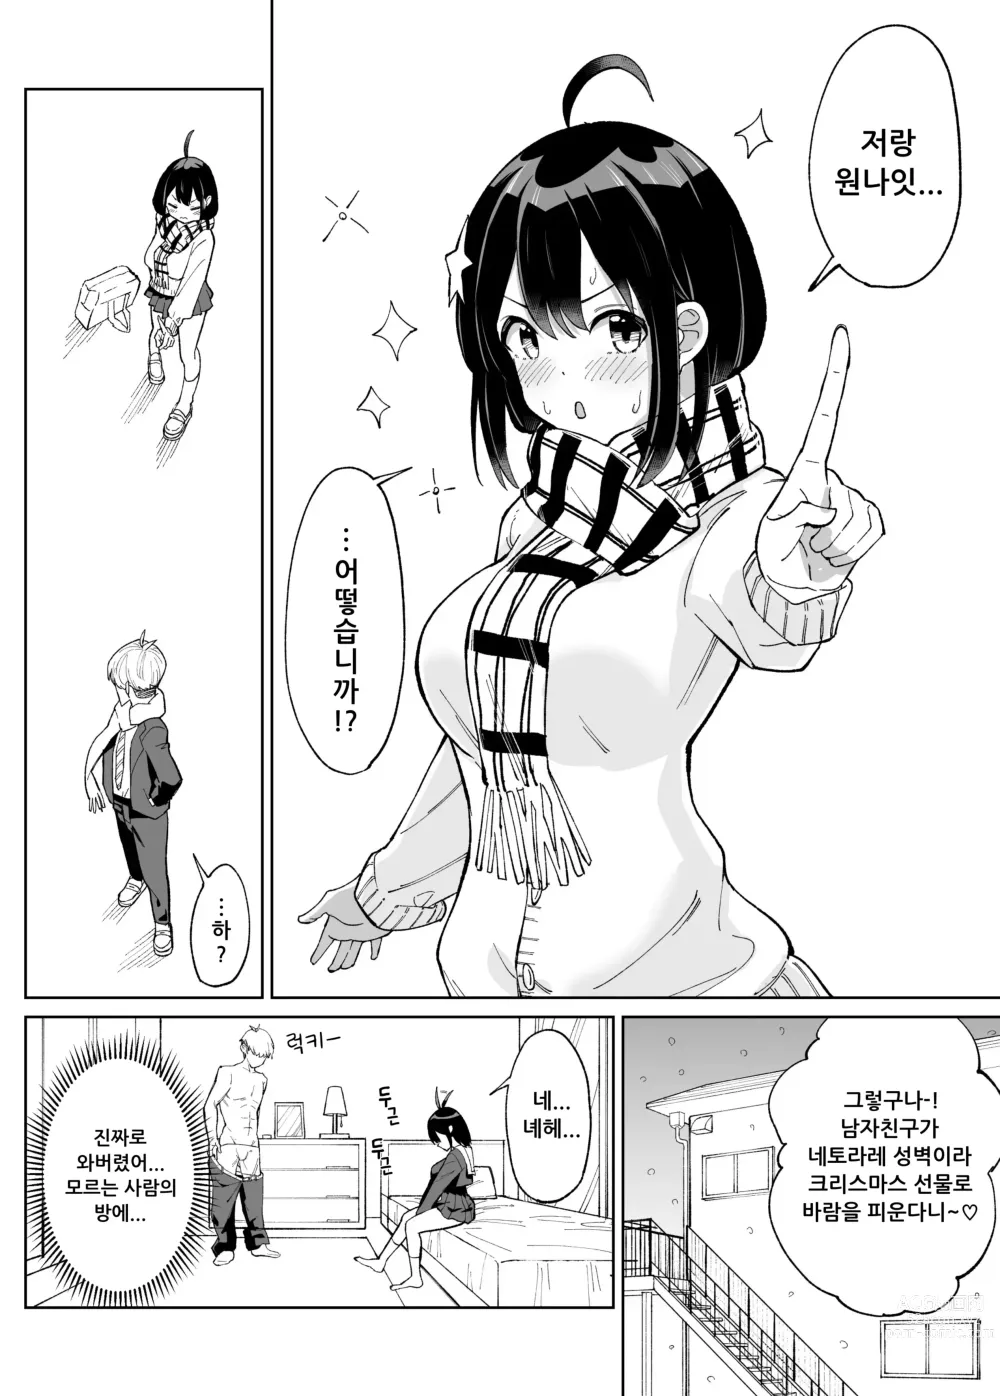 Page 13 of doujinshi 소꿉친구인 그녀에게 받은 X'mas 선물은 네토라레 였습니다